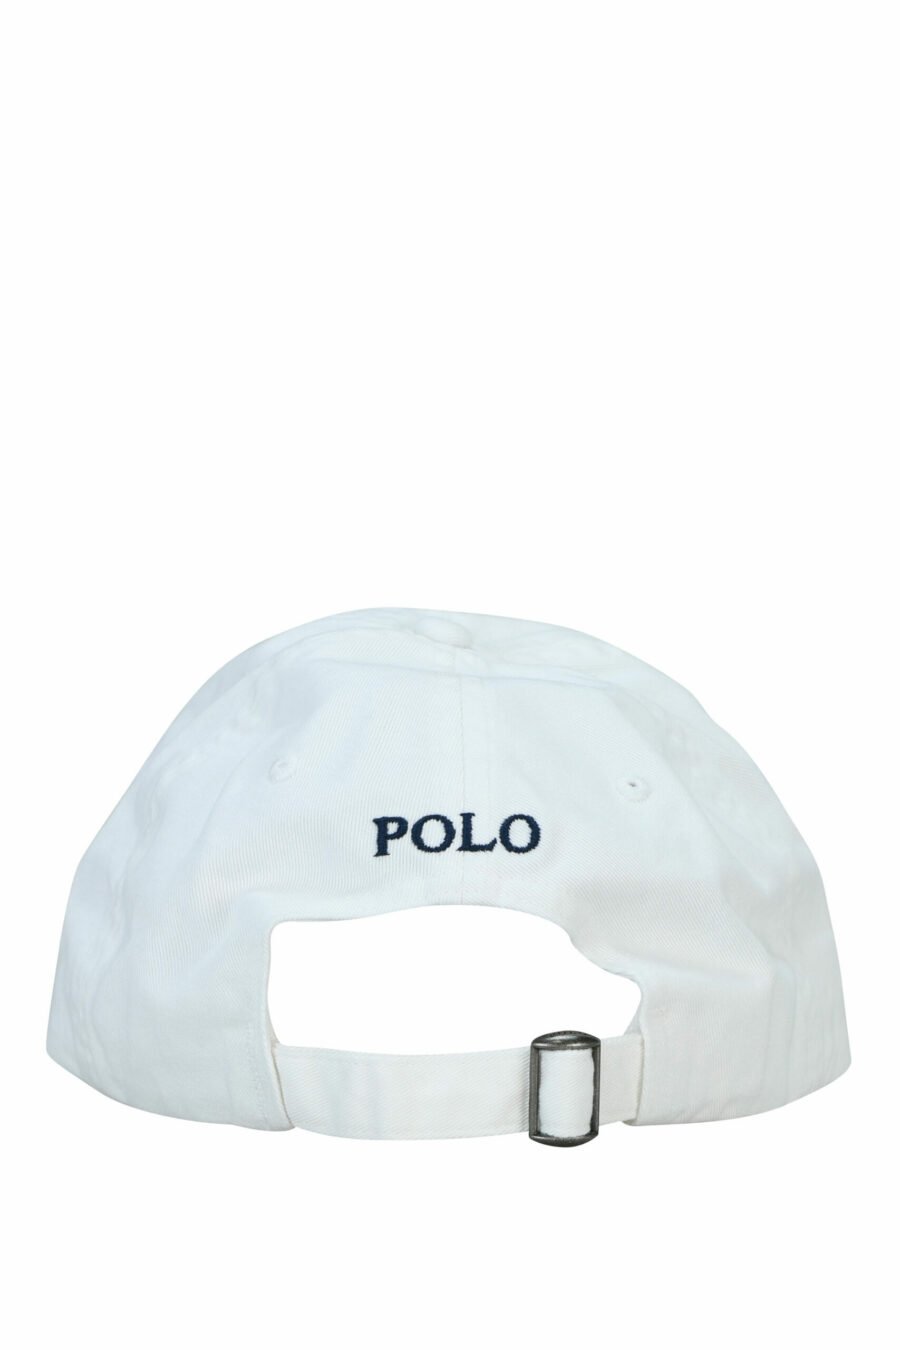 White cap with mini-logo "polo" - 3616531139408 1 scaled